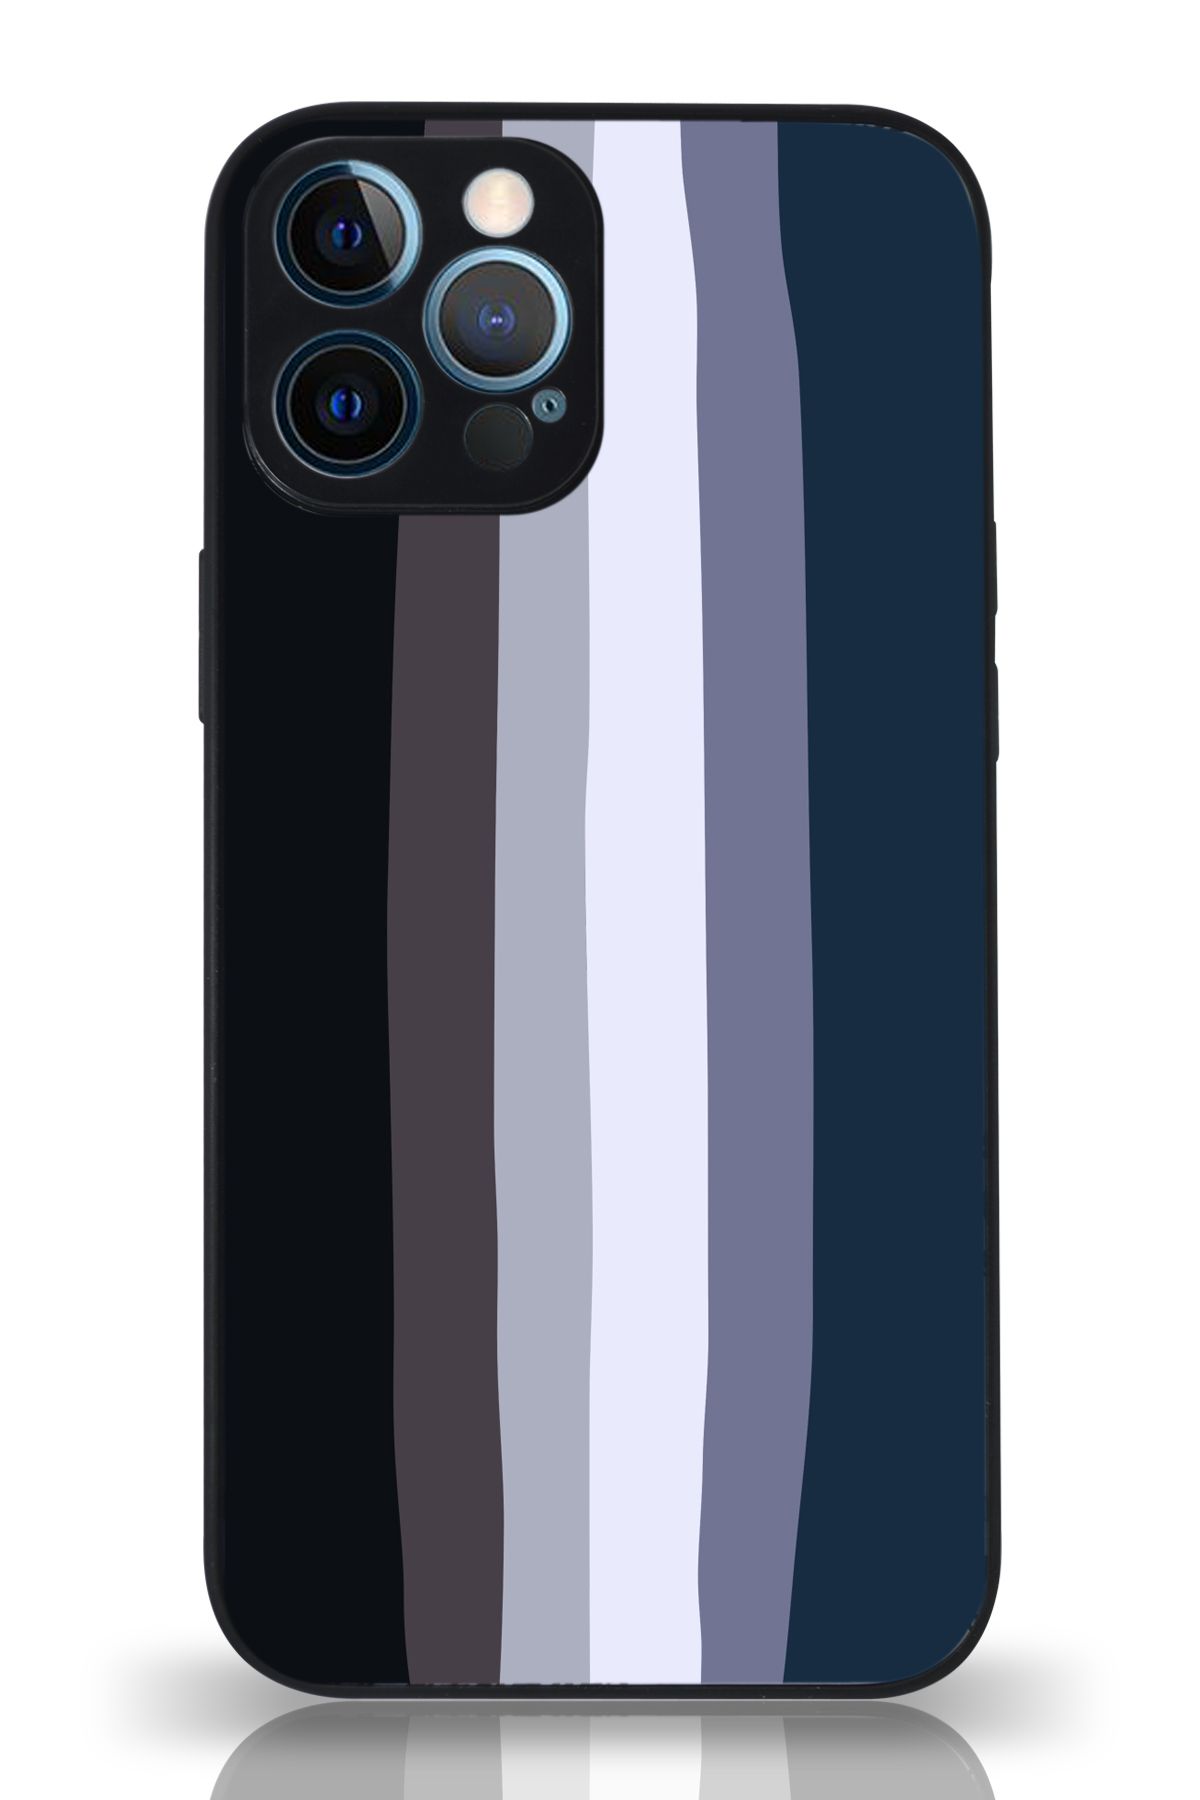 PrintiFy Apple iPhone 12 Pro Kamera Korumalı Mavi Gökkuşağı Desenli Cam Kapak Siyah